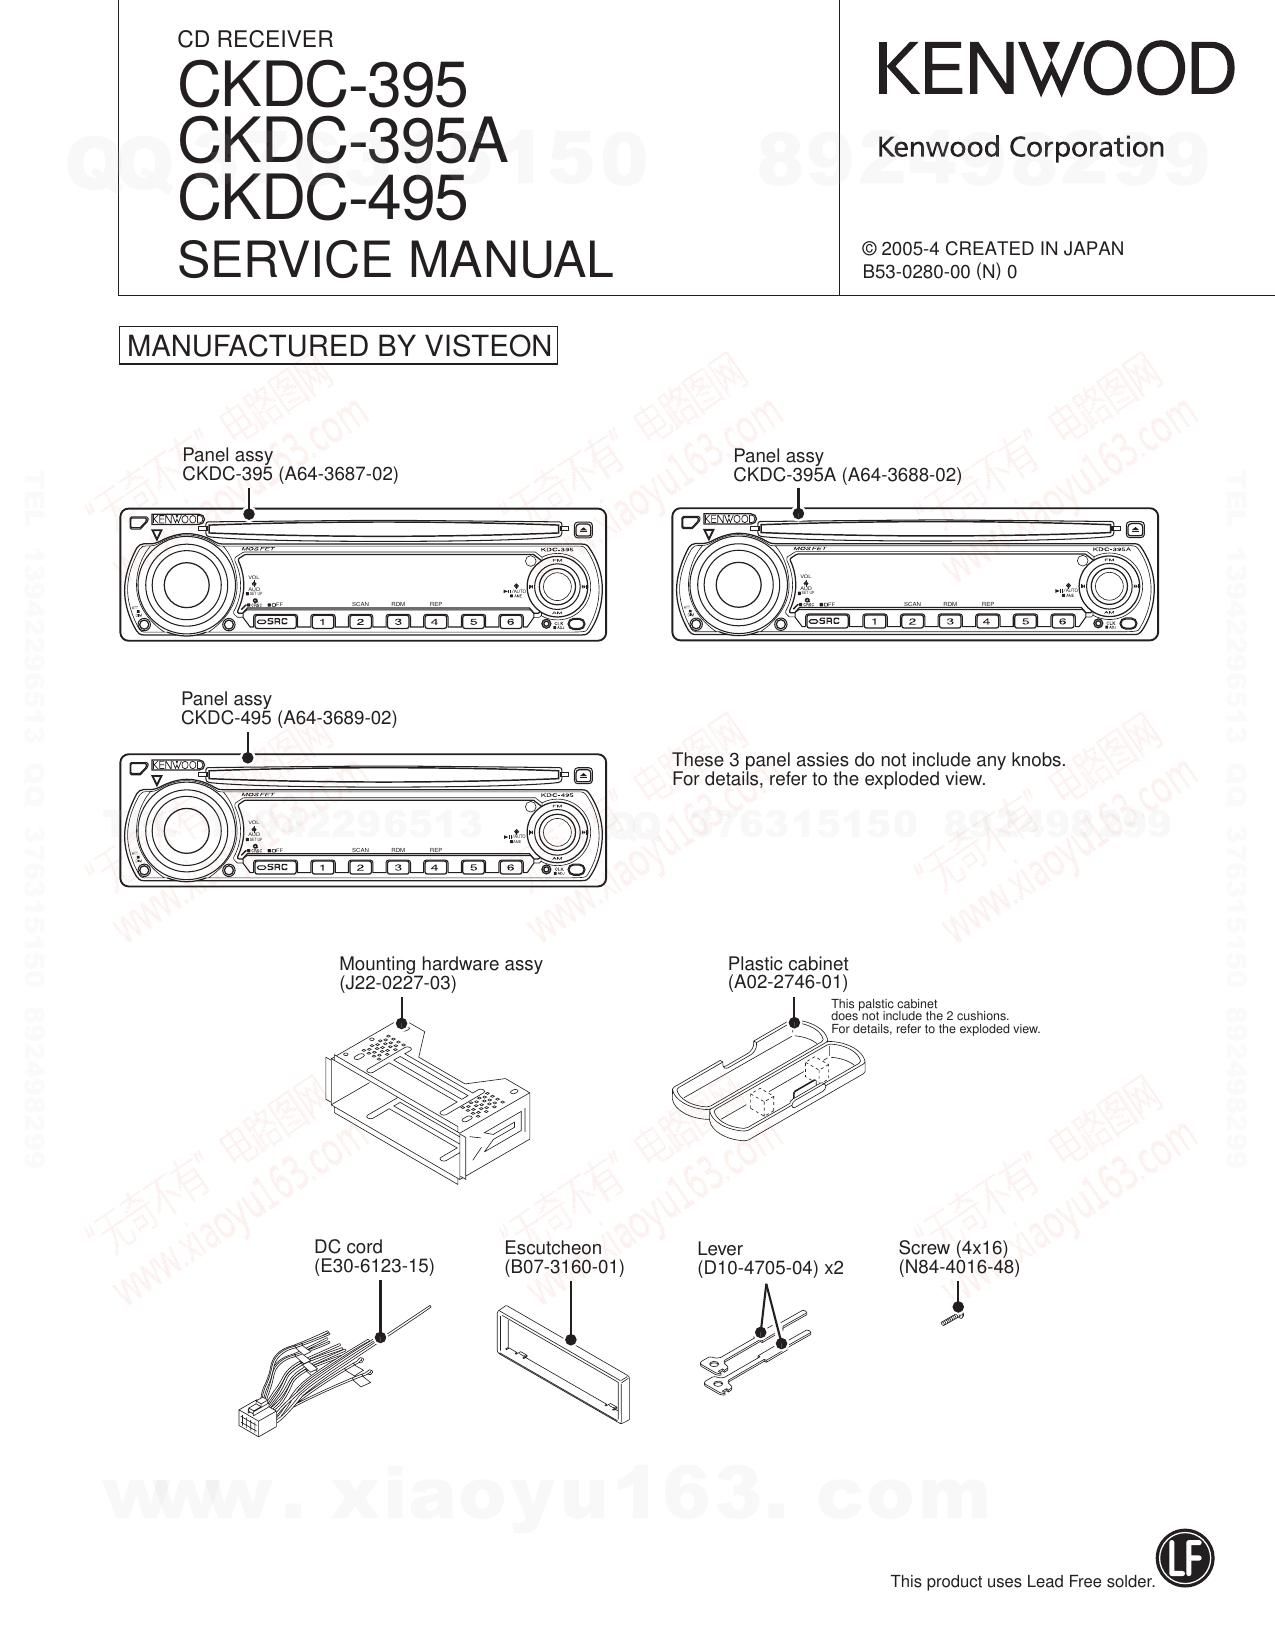 Kenwood CKDC 395 Service Manual